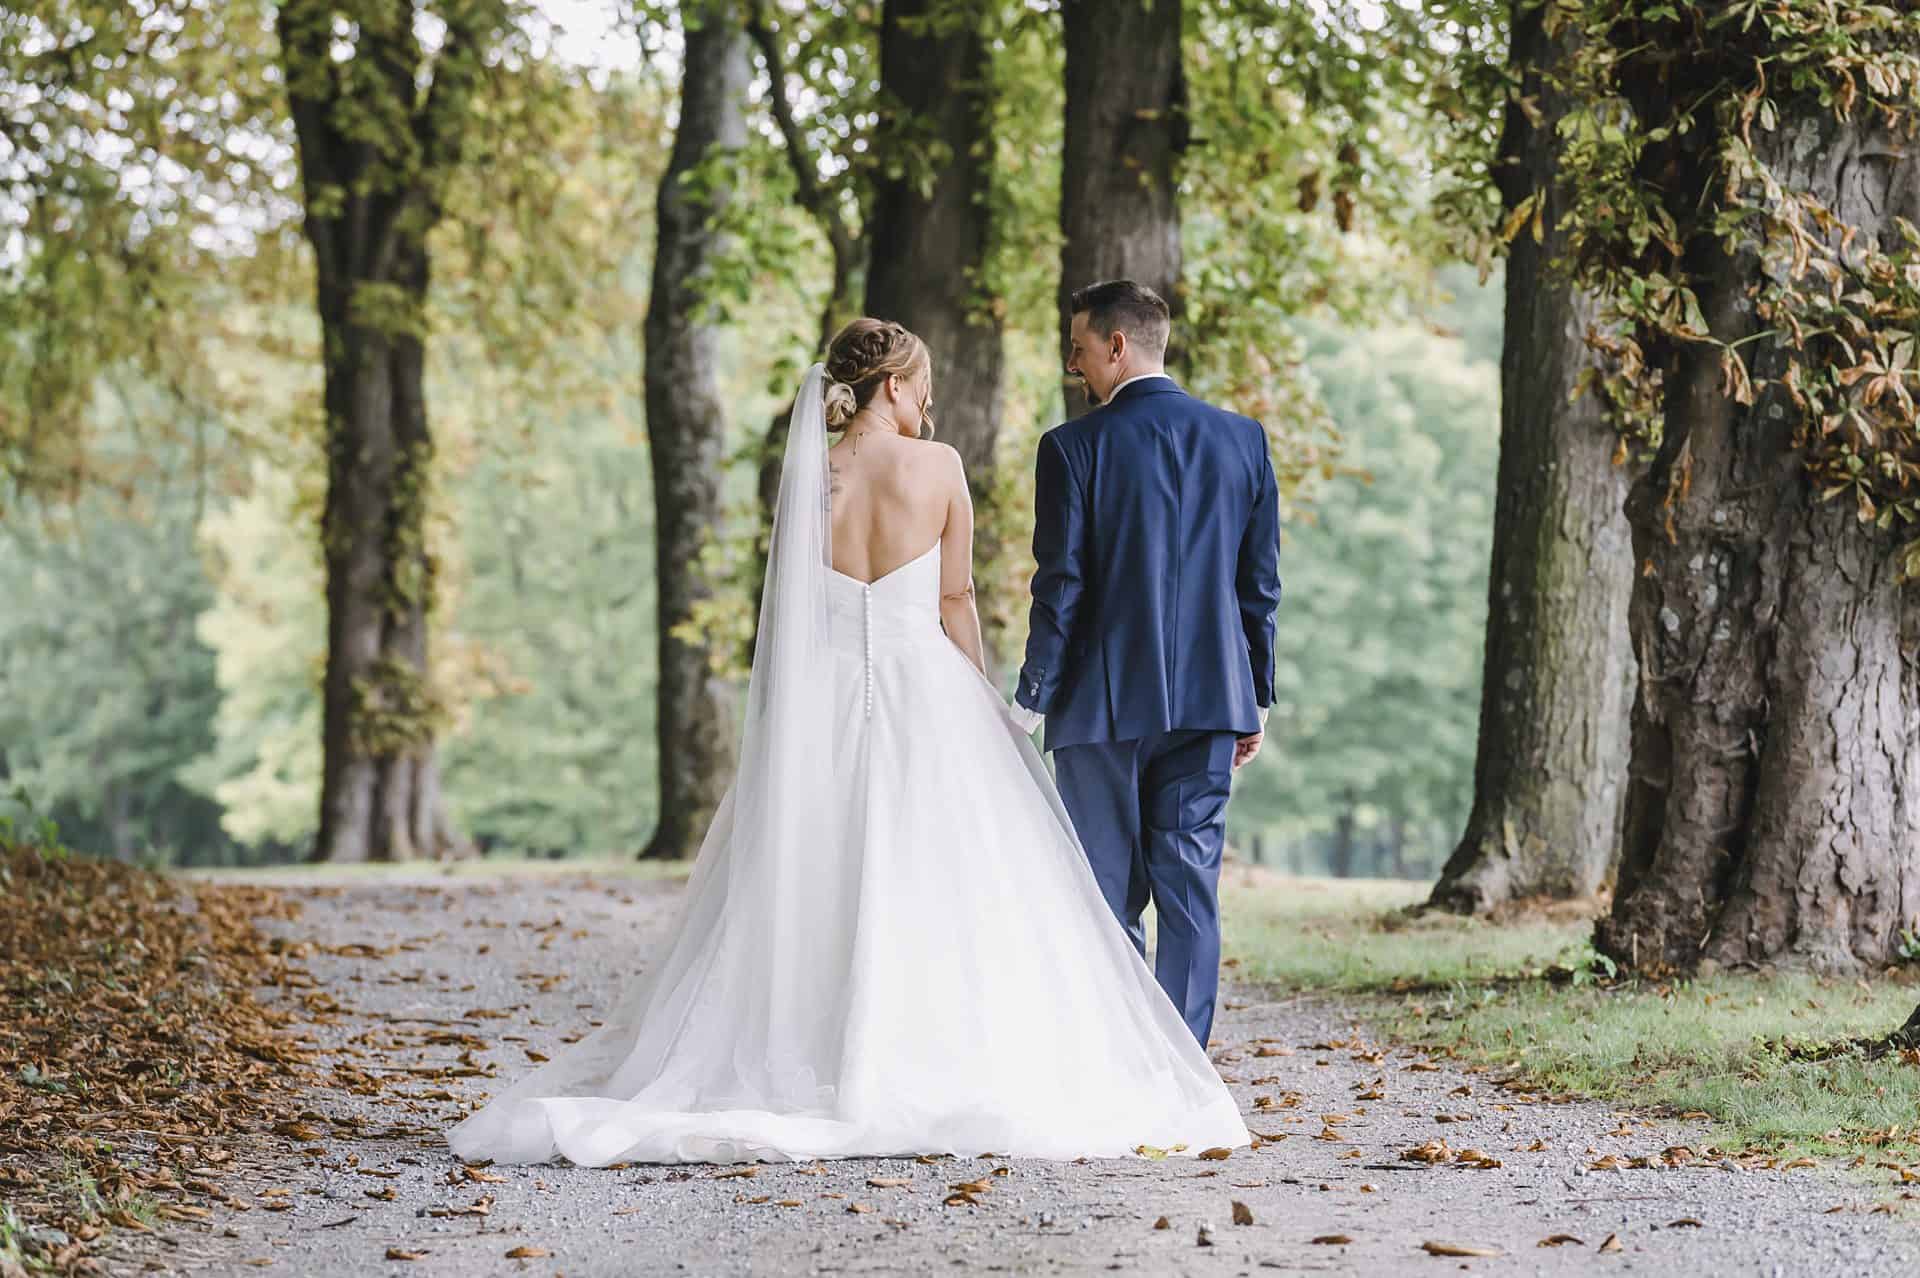 Eine Braut und ein Bräutigam gehen einen Pfad im Wald entlang.